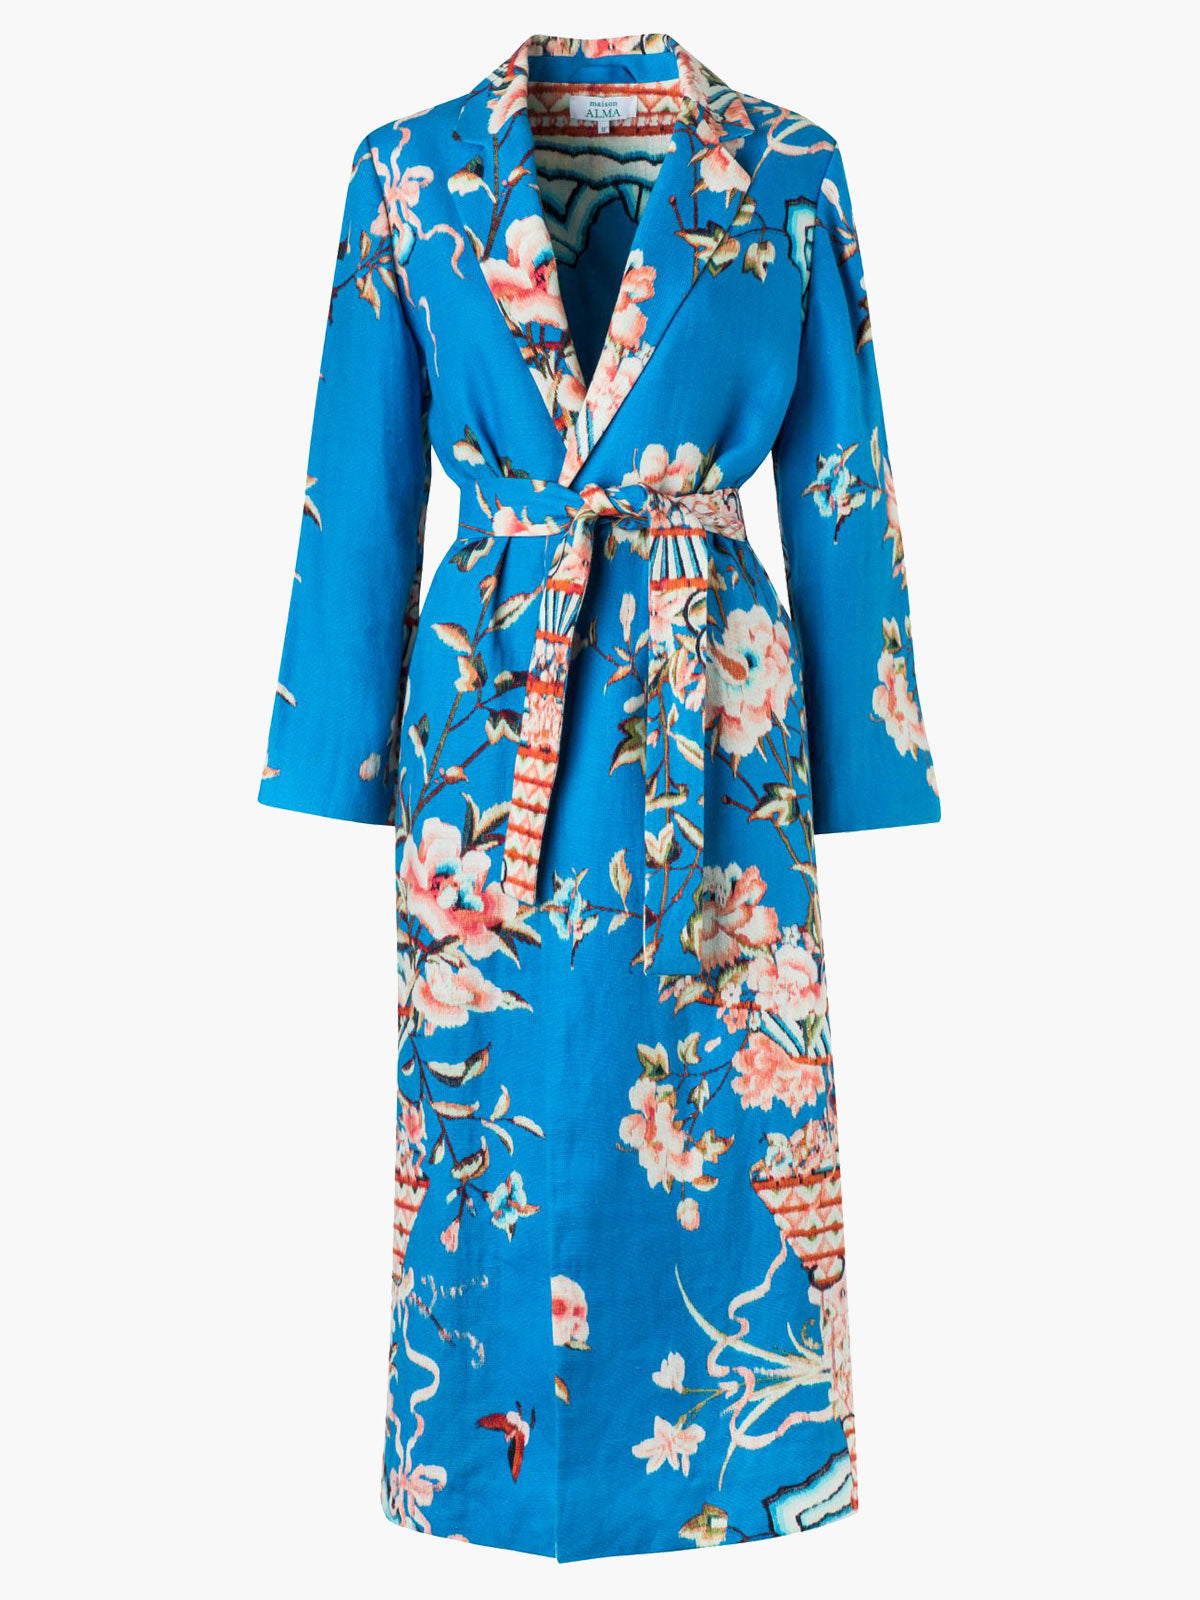 Kimono | Mar y Rosas - Fashionkind